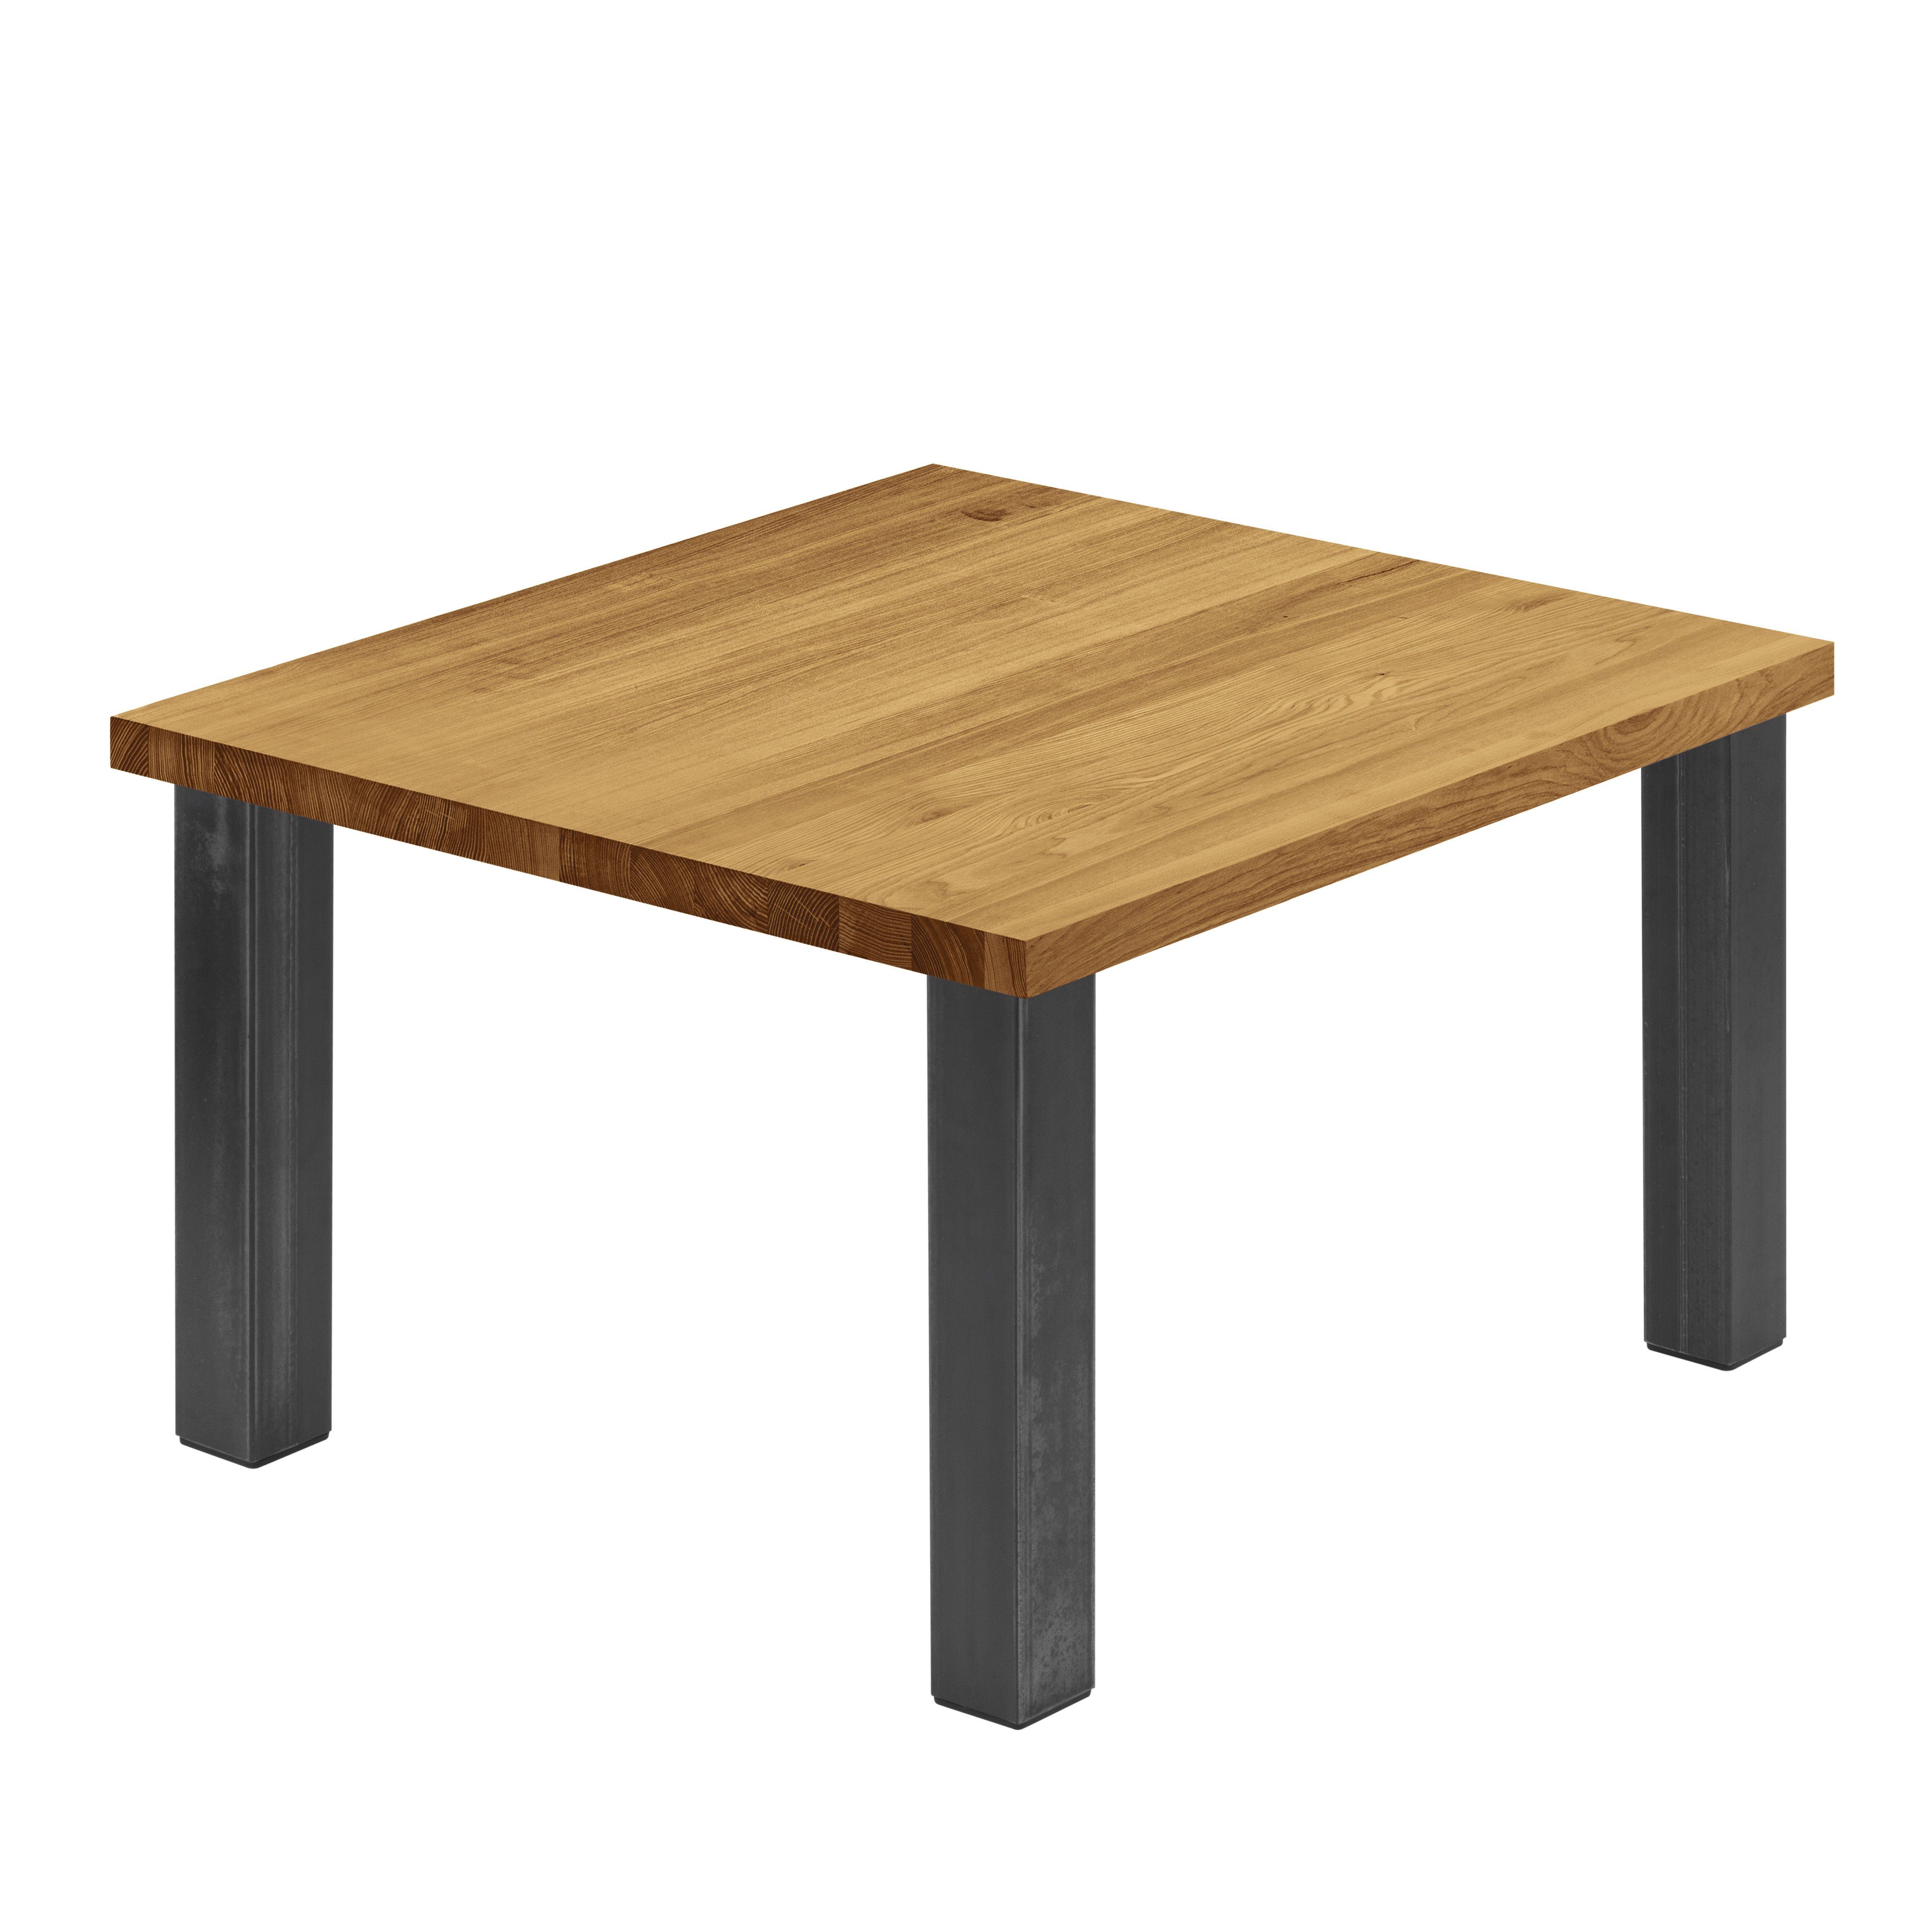 LAMO Manufaktur Esstisch Classic Küchentisch Tischplatte Massivholz inkl. Metallgestell (1 Tisch), gerade Kante